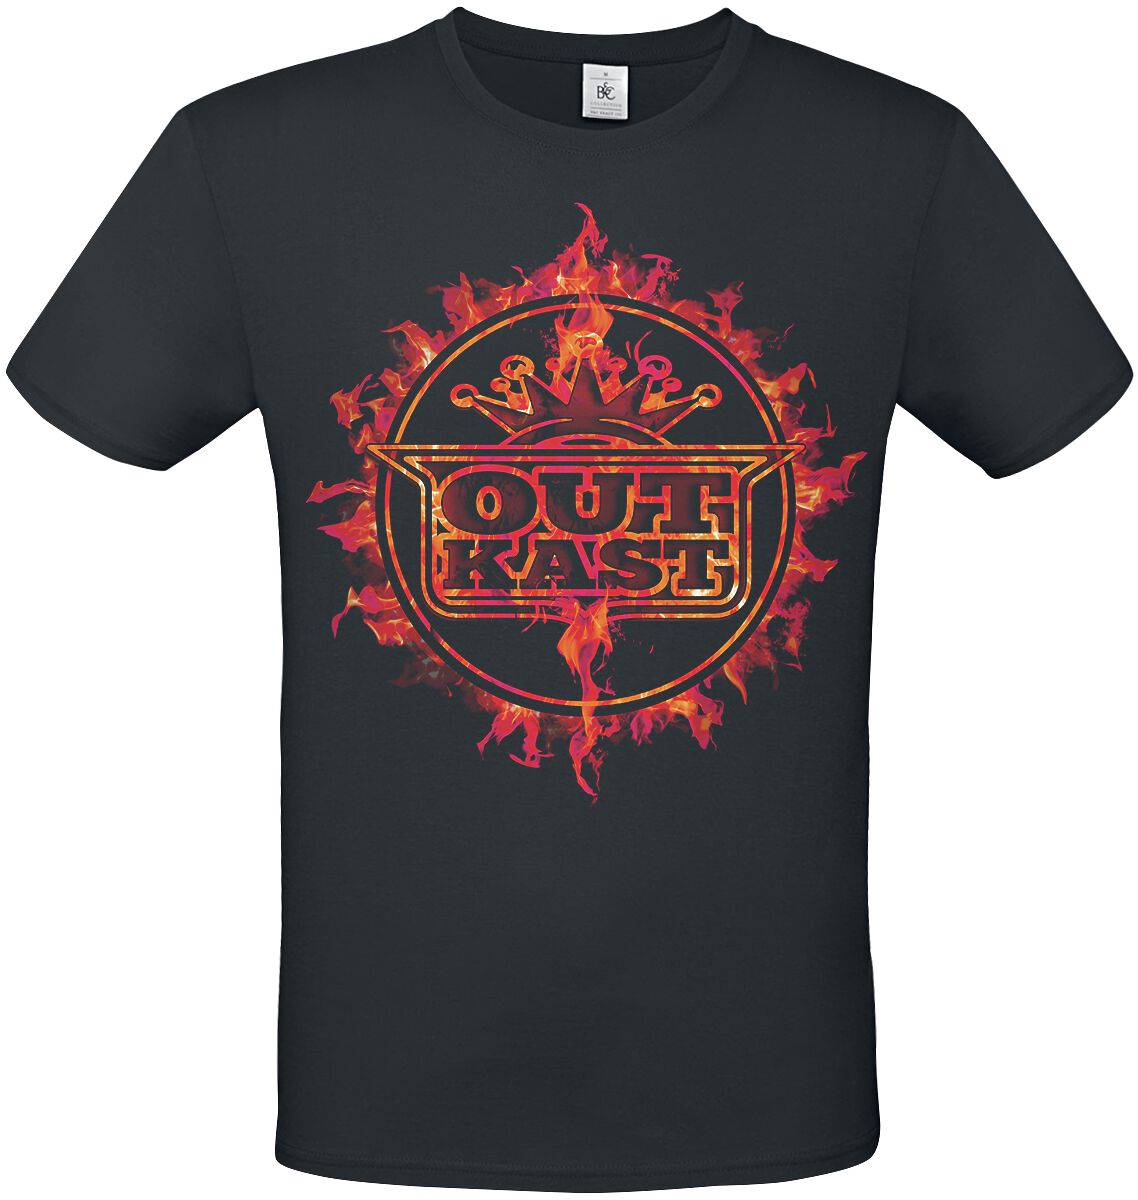 OutKast T-Shirt - Flame Logo - S bis 3XL - für Männer - Größe S - schwarz  - Lizenziertes Merchandise!